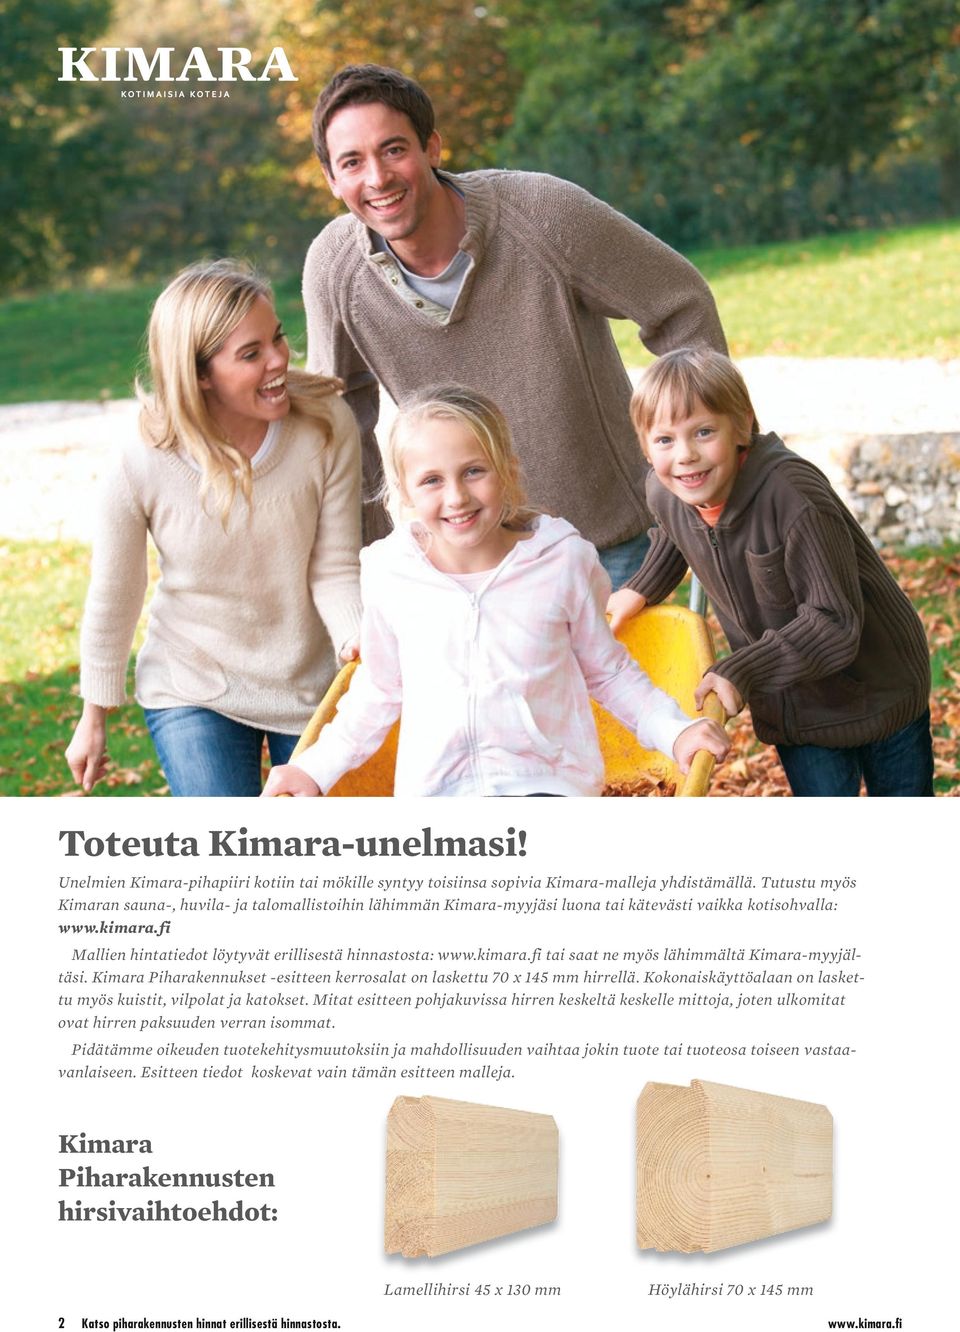 kimara.fi tai saat ne myös lähimmältä Kimara-myyjältäsi. Kimara Piharakennukset -esitteen kerrosalat on laskettu 70 x 145 mm hirrellä.